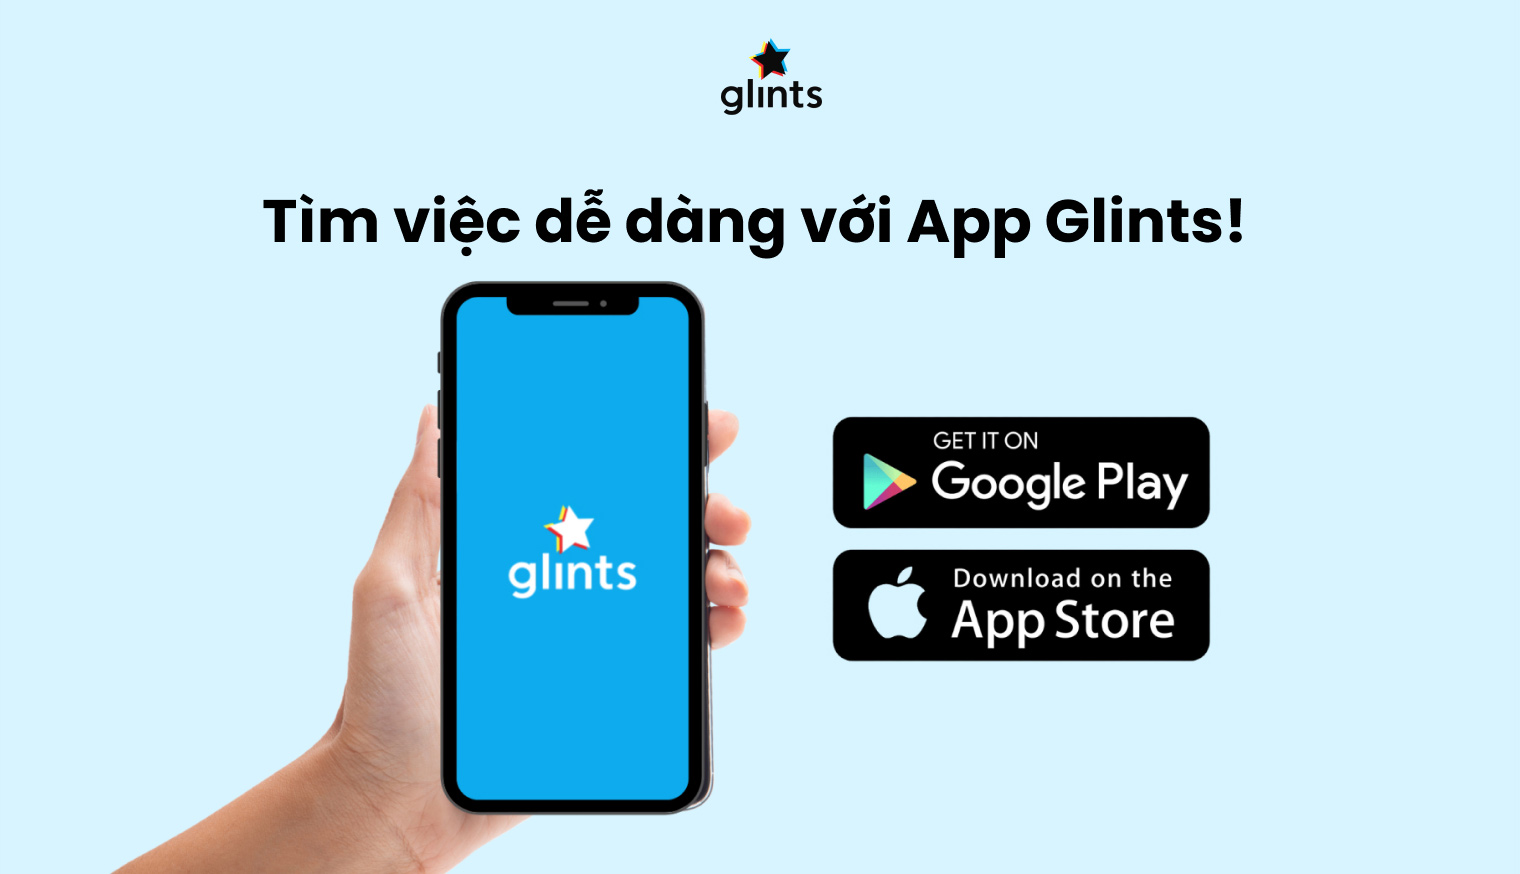 Tìm kiếm việc làm Remote tại Glints Việt Nam - đồng hành cùng cơ hội hấp dẫn - 5